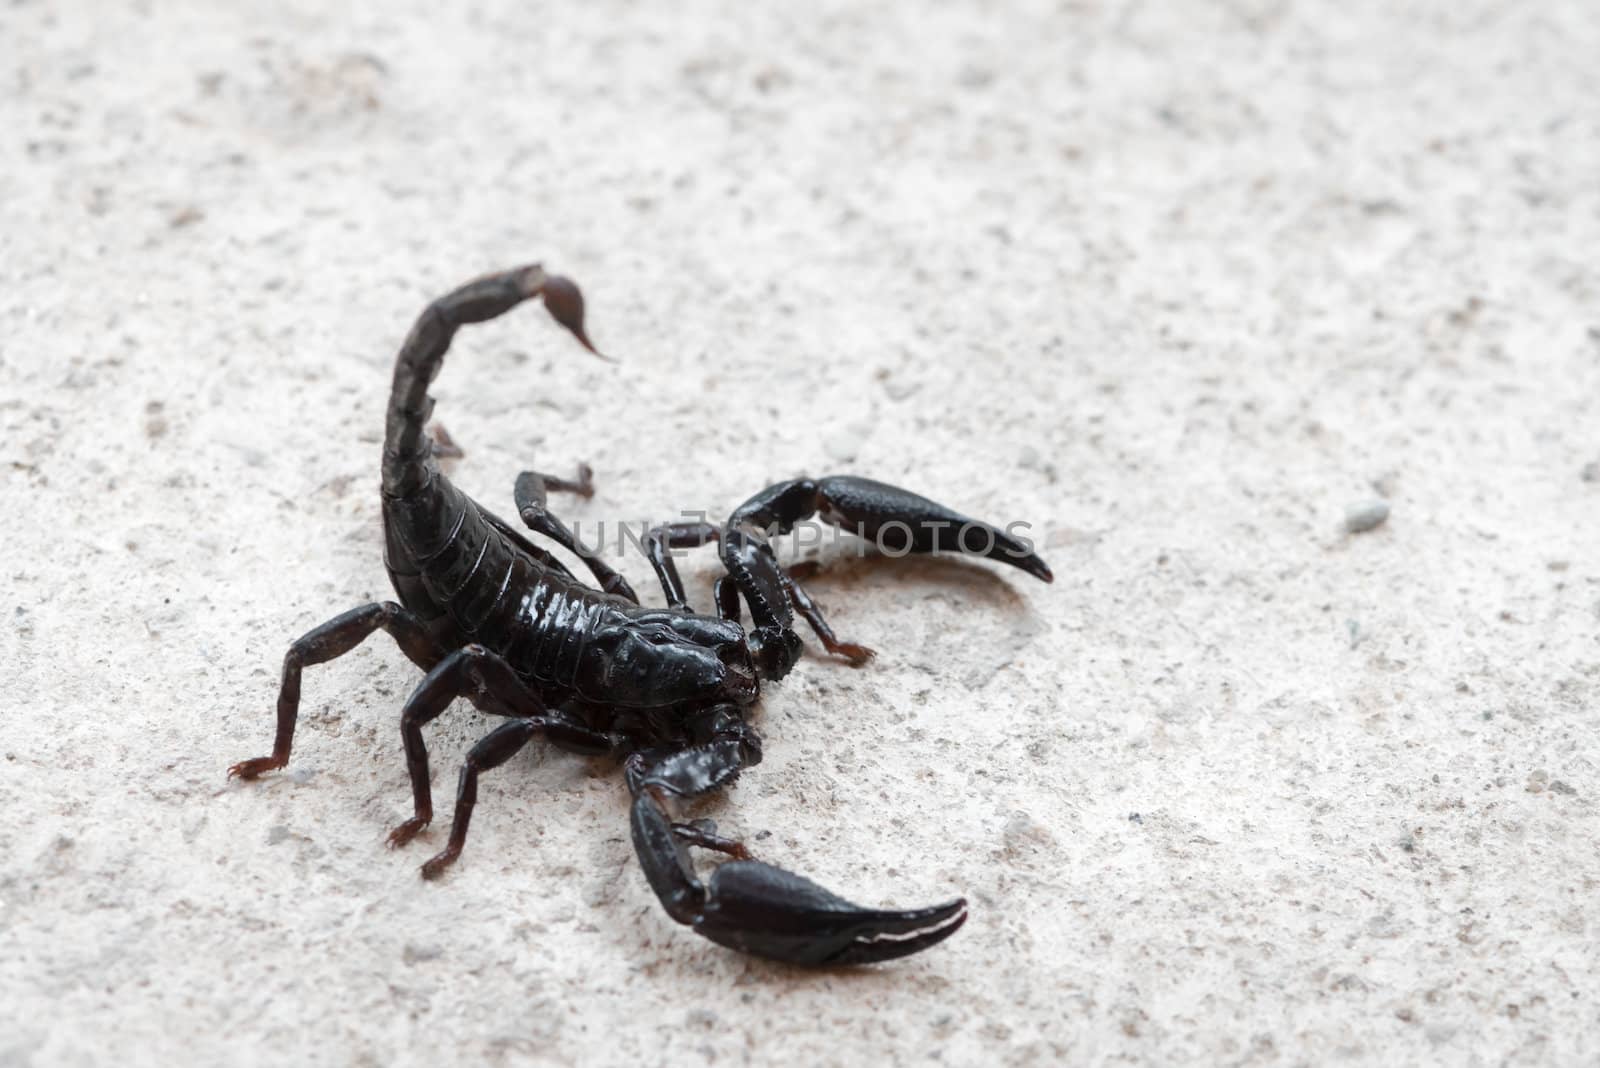 Black Asian forest scorpion by iryna_rasko